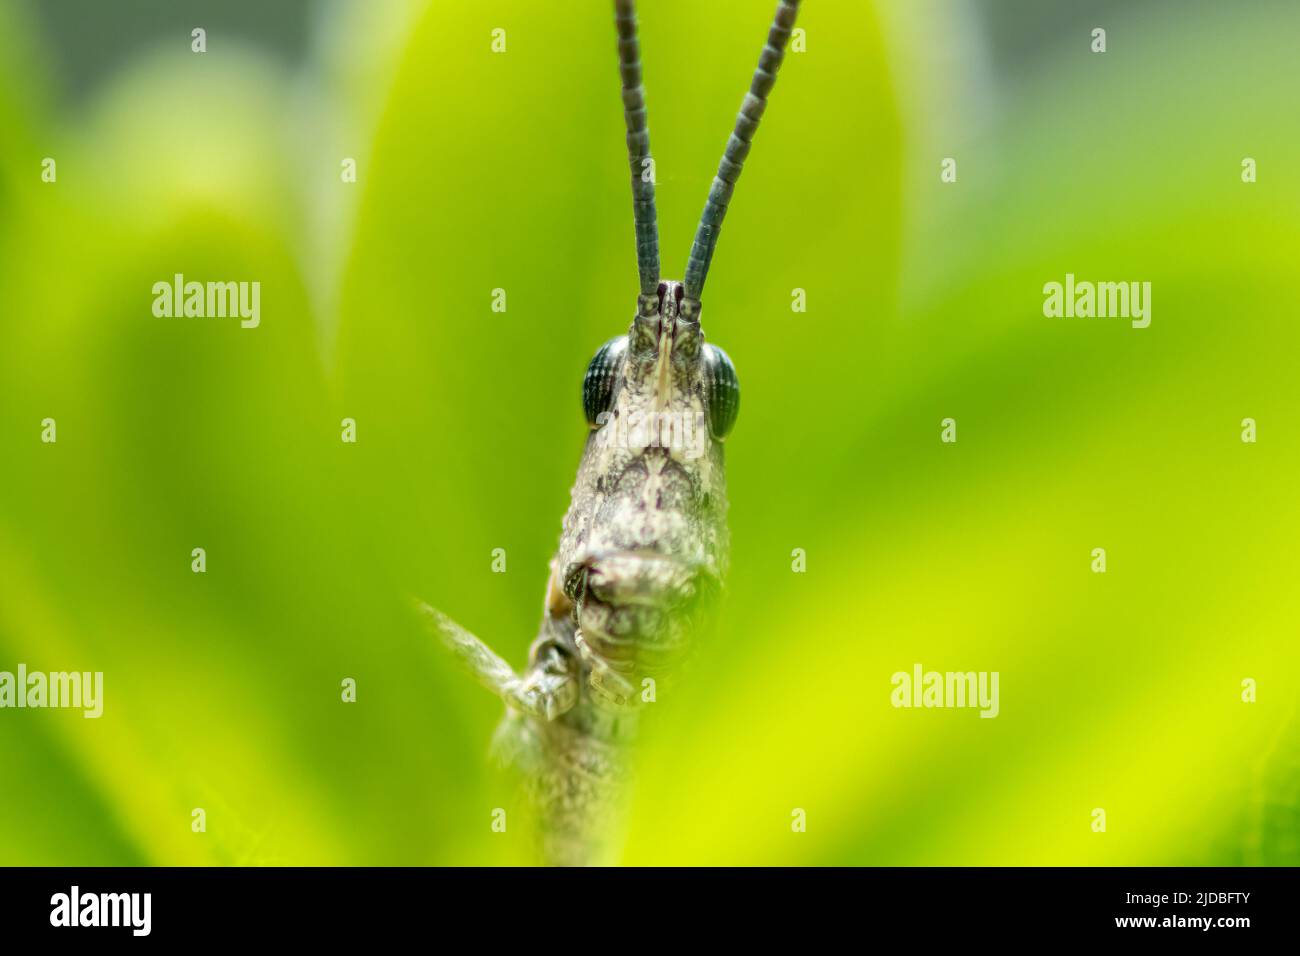 Gros plan extrême d'une sauterelle sur une plante. Photographie macro. Banque D'Images